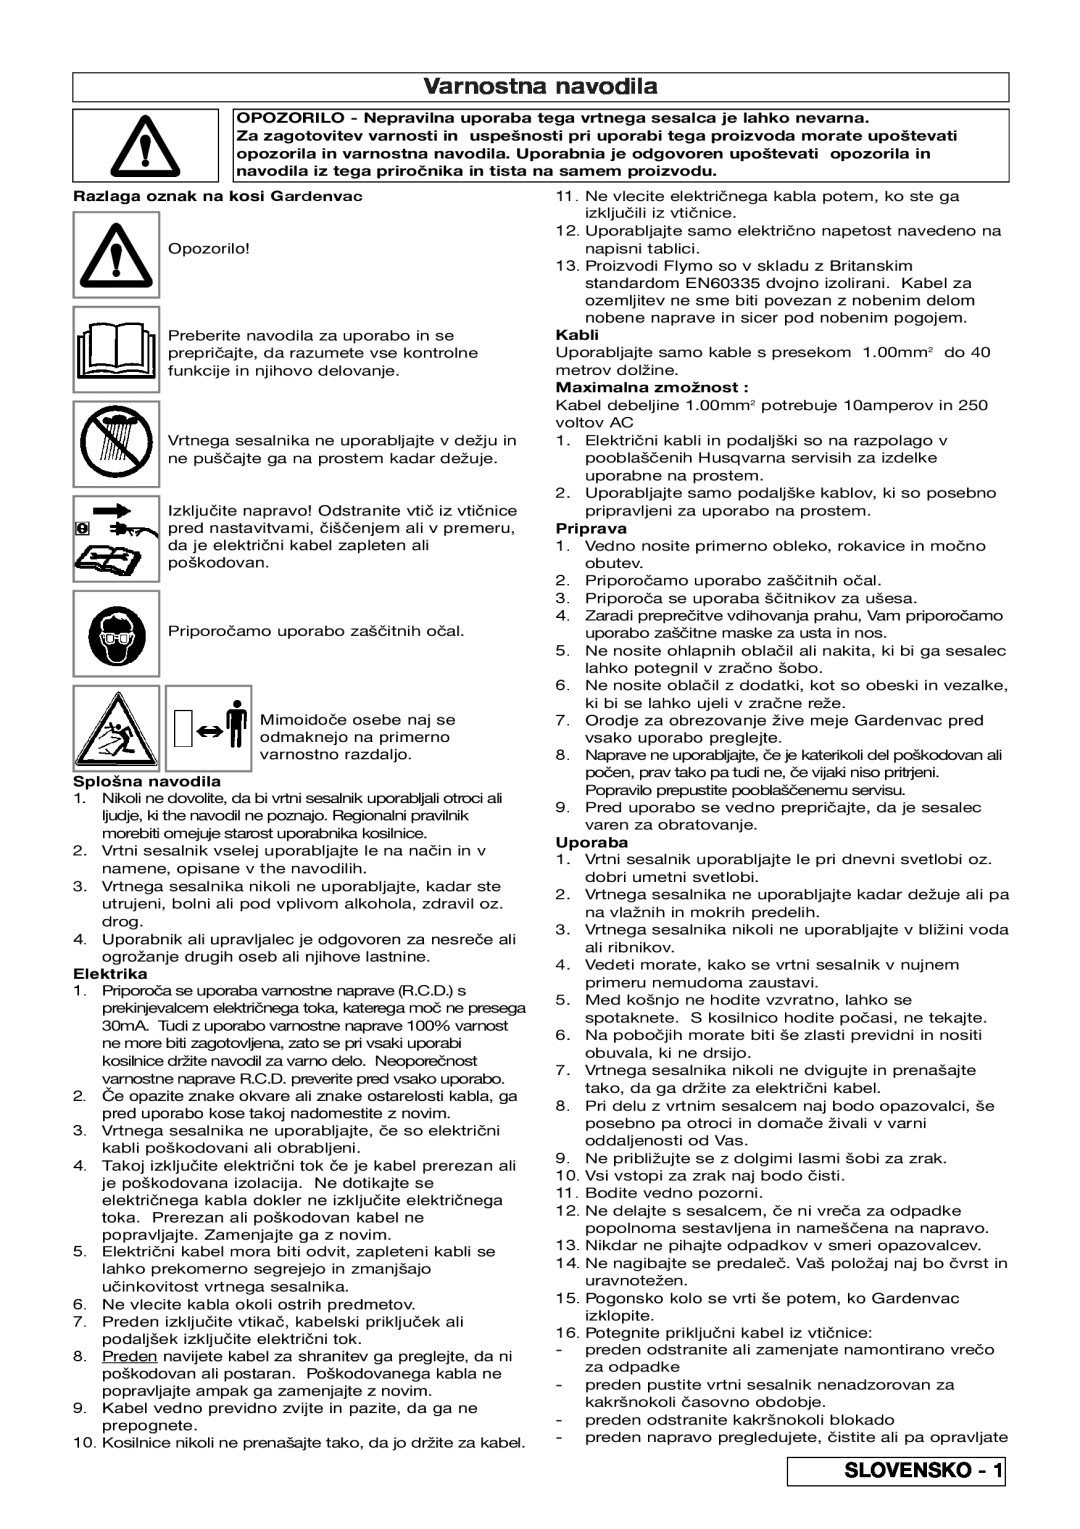 Flymo 2200 Varnostna navodila, Slovensko, Razlaga oznak na kosi Gardenvac, Splošna navodila, Elektrika, Kabli, Priprava 